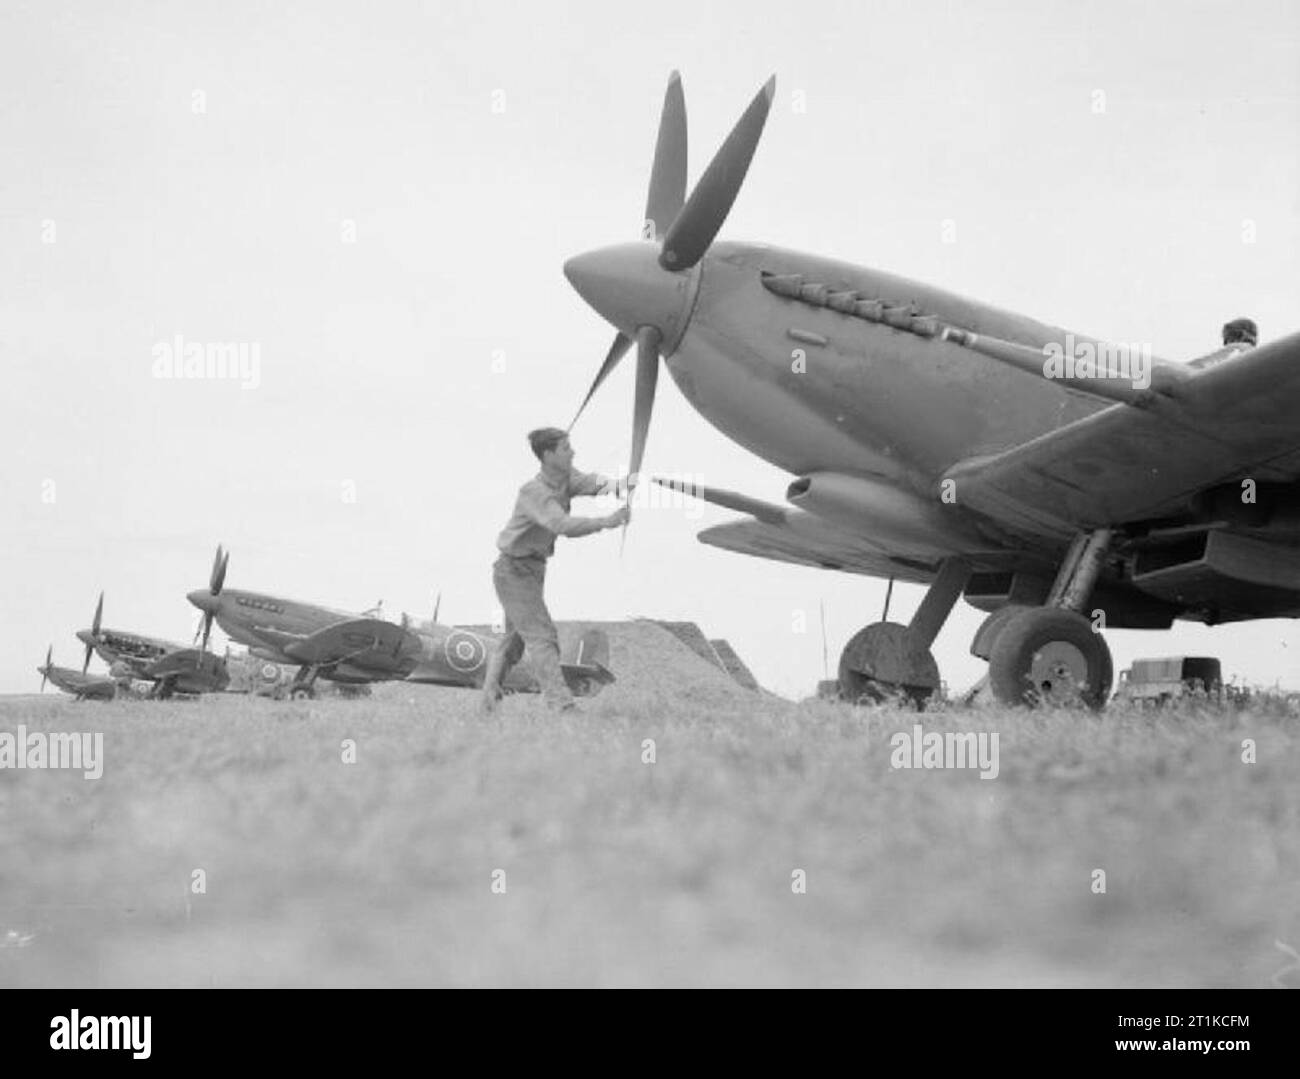 Royal Air Force - Italien, auf dem Balkan und in Südosteuropa, 1944-1945. Eine Linie der Supermarine Spitfire Mark IXs von Nr. 43 Squadron RAF von Nettuno, Italien. Ziehen an den Propeller im Vordergrund führende Aircraftman J Braun von D2 London. Stockfoto